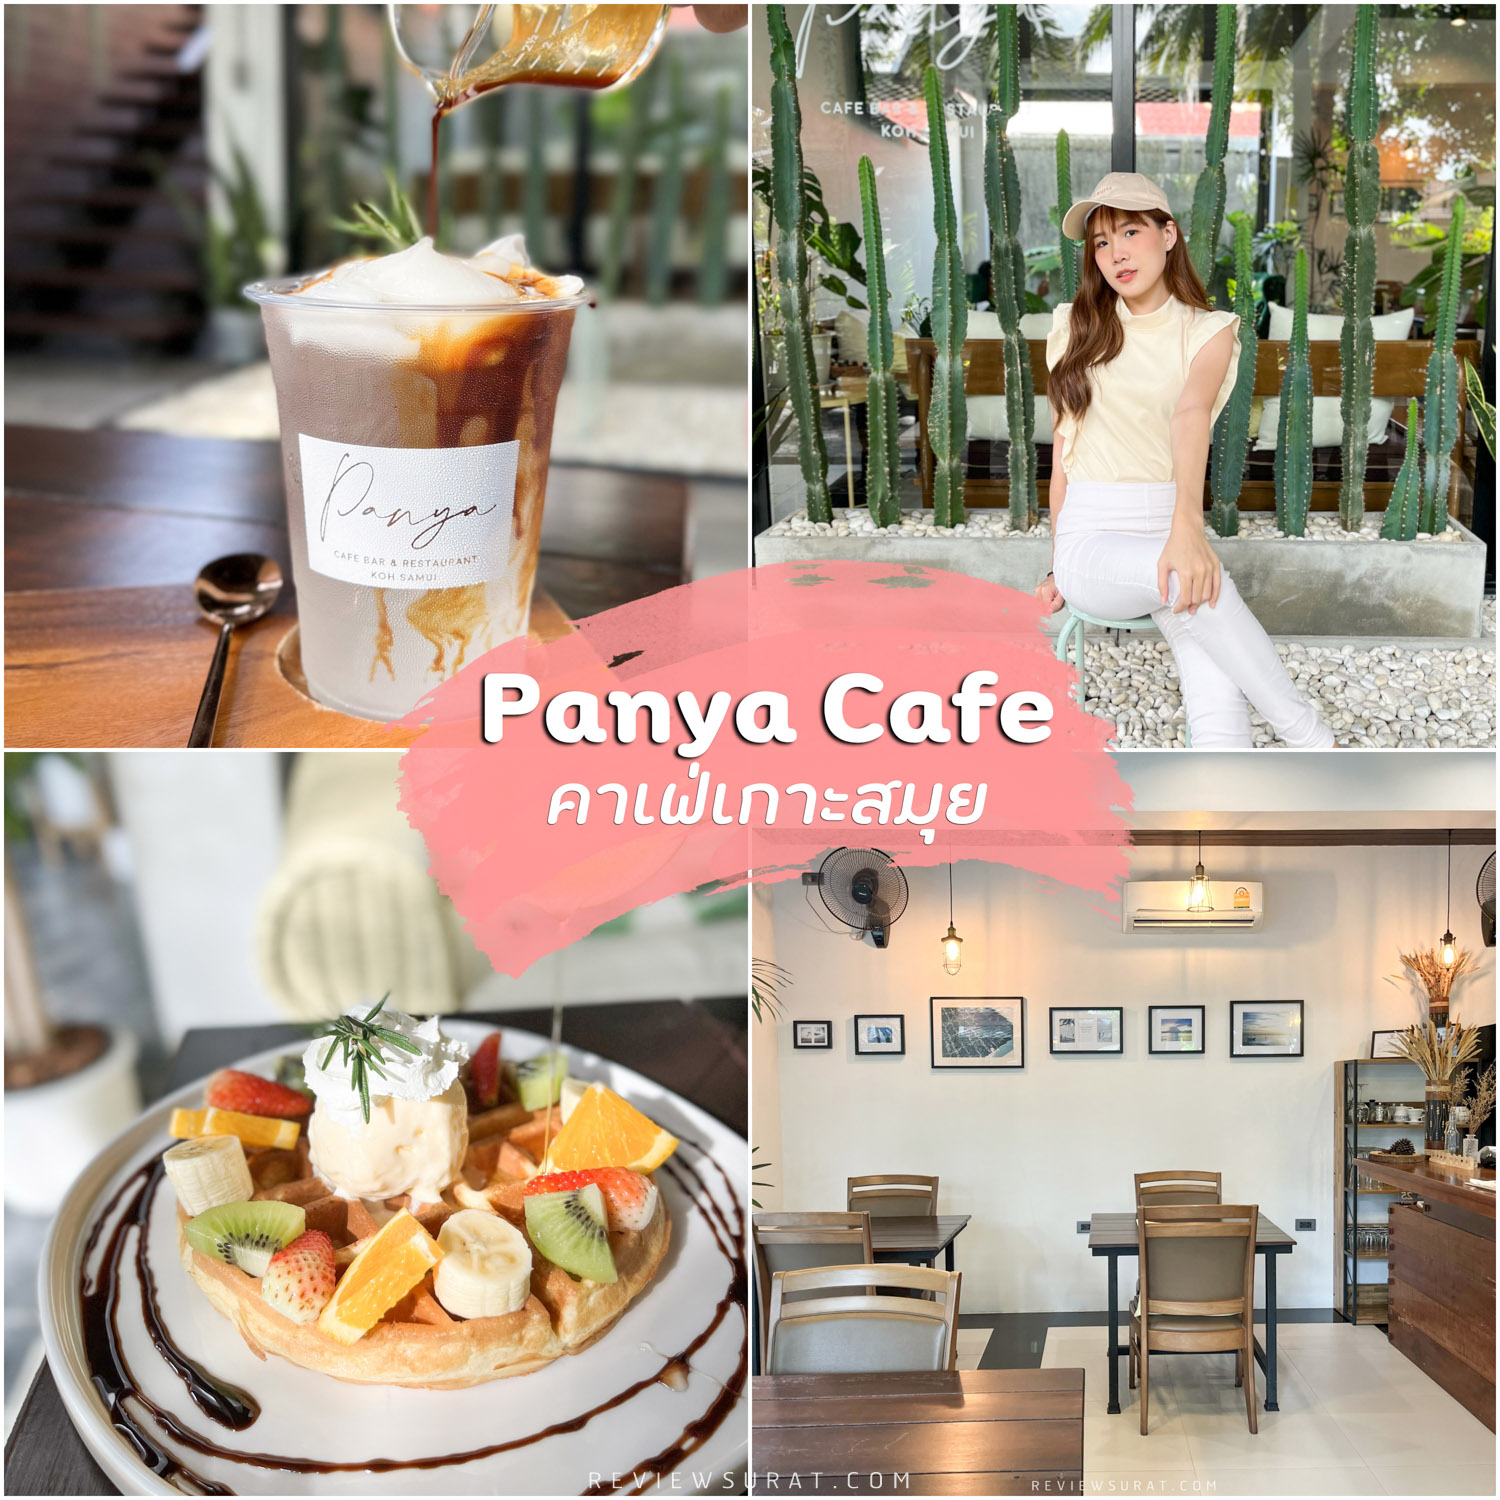 Panya Cafe Bar and Restaurant คาเฟ่เกาะสมุย บรรยากาศเงียบสงบ กาแฟดีด้วยน้าา มุมถ่ายรูปเพียบ